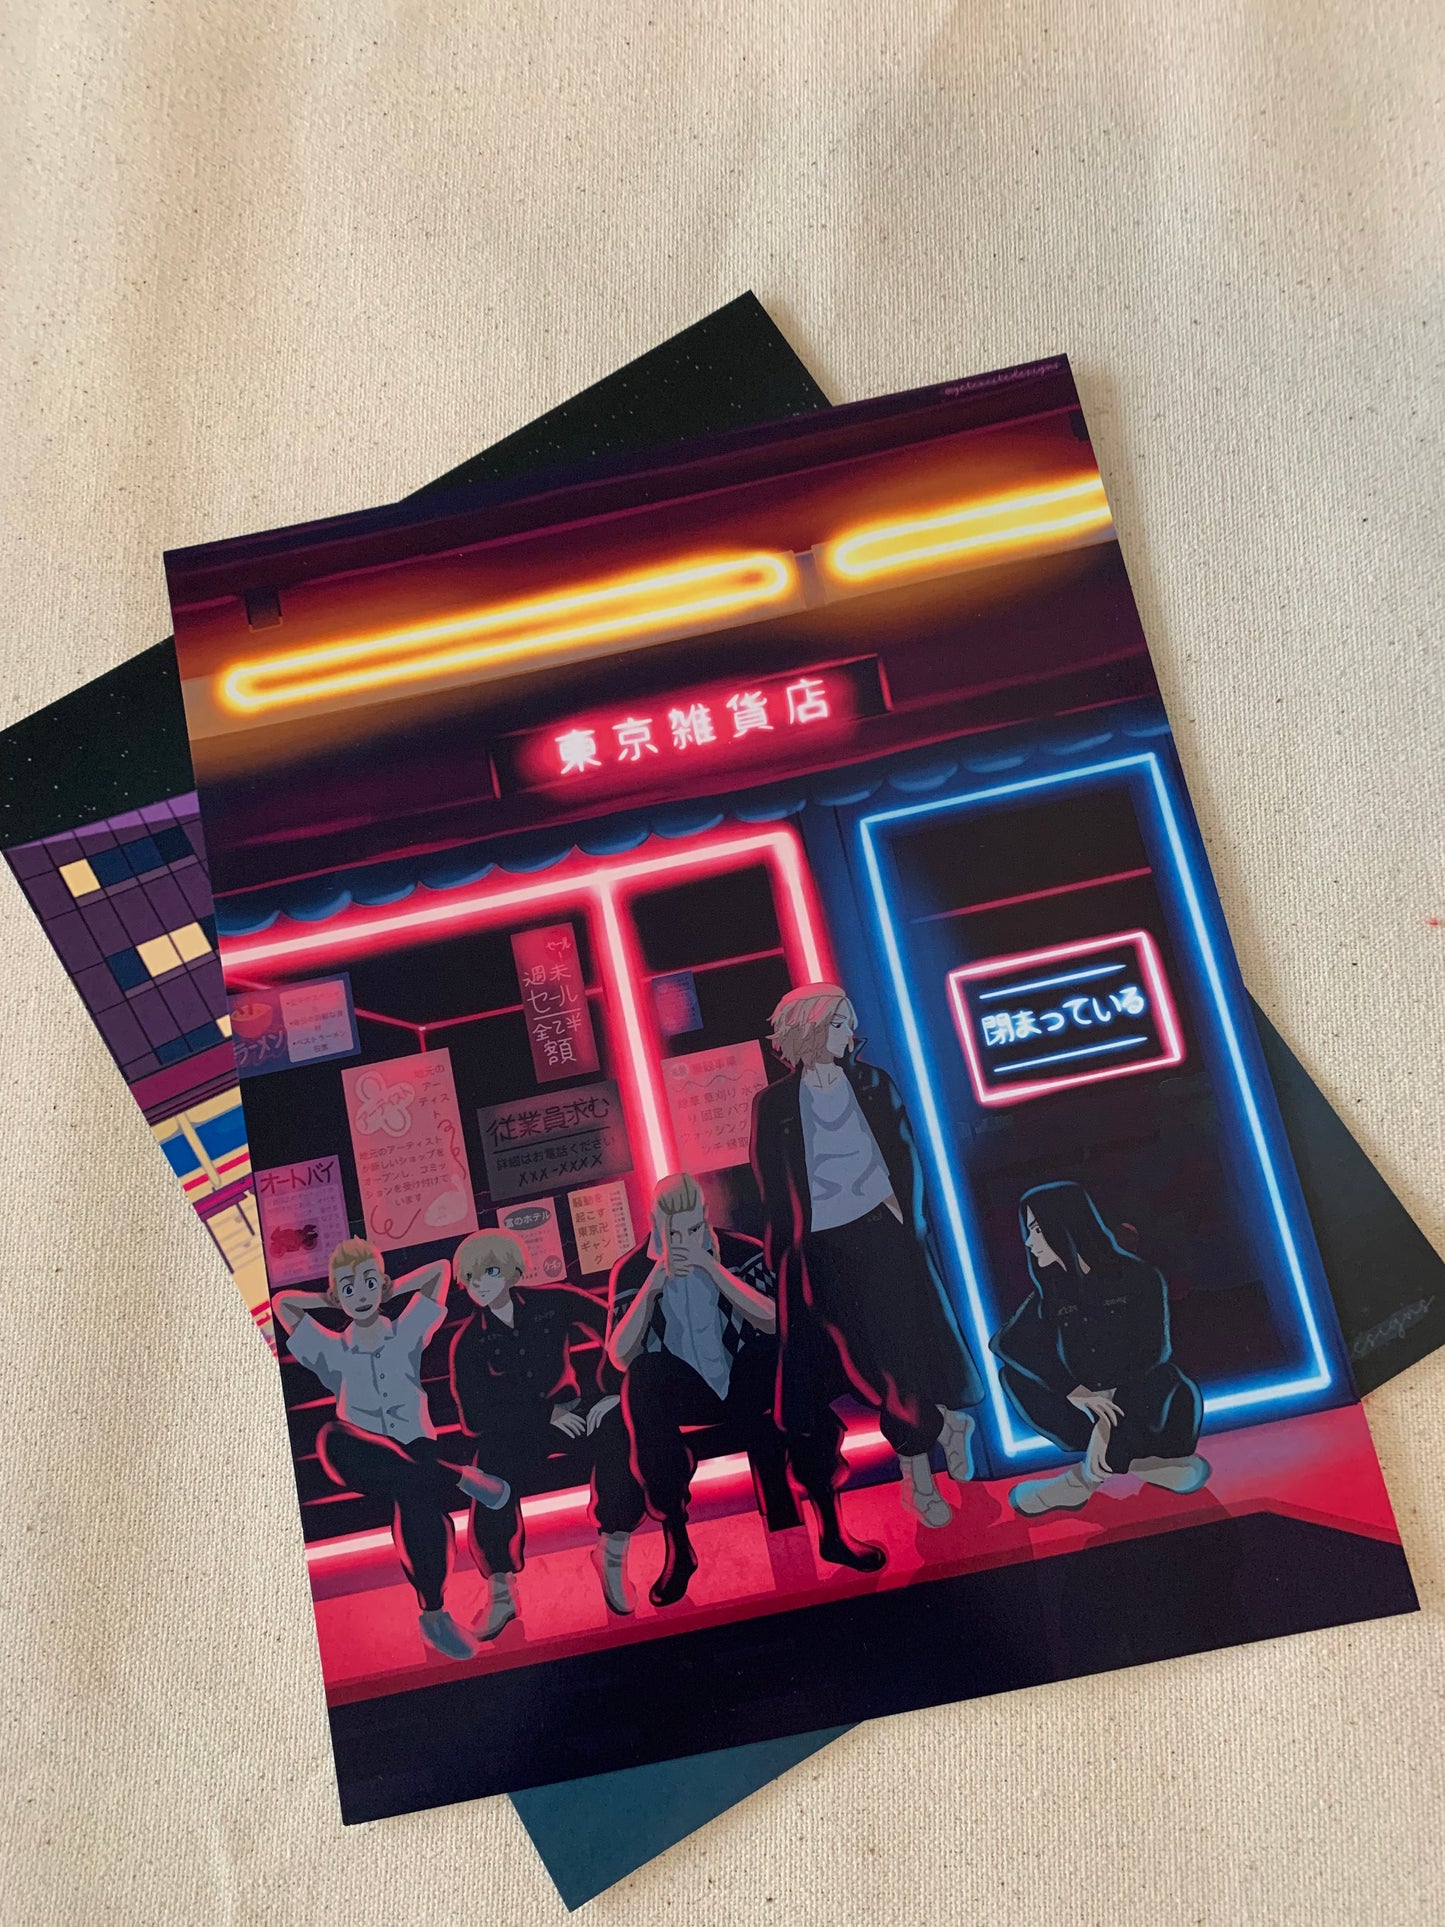 Tokyo Manji Neon Store Print